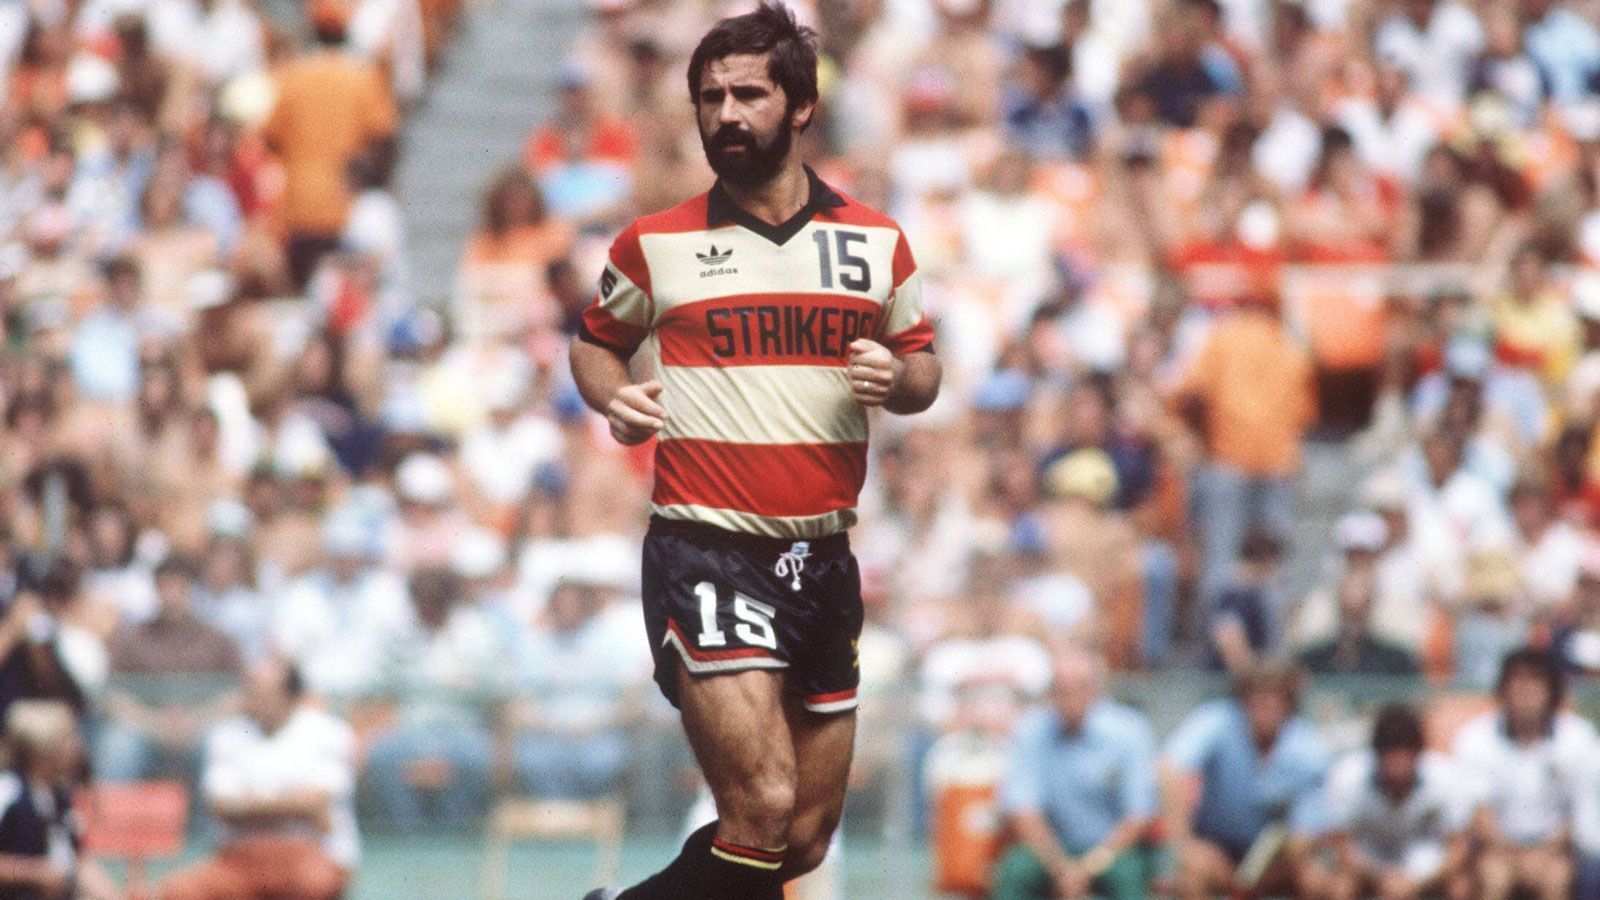 
                <strong>Gerd Müller</strong><br>
                &#x2022; In der MLS aktiv: 1979 bis 1981<br>&#x2022; Verein: Fort Lauderdale Strikers<br>&#x2022; Absolvierte Partien: 71 (38 Tore)<br>
              